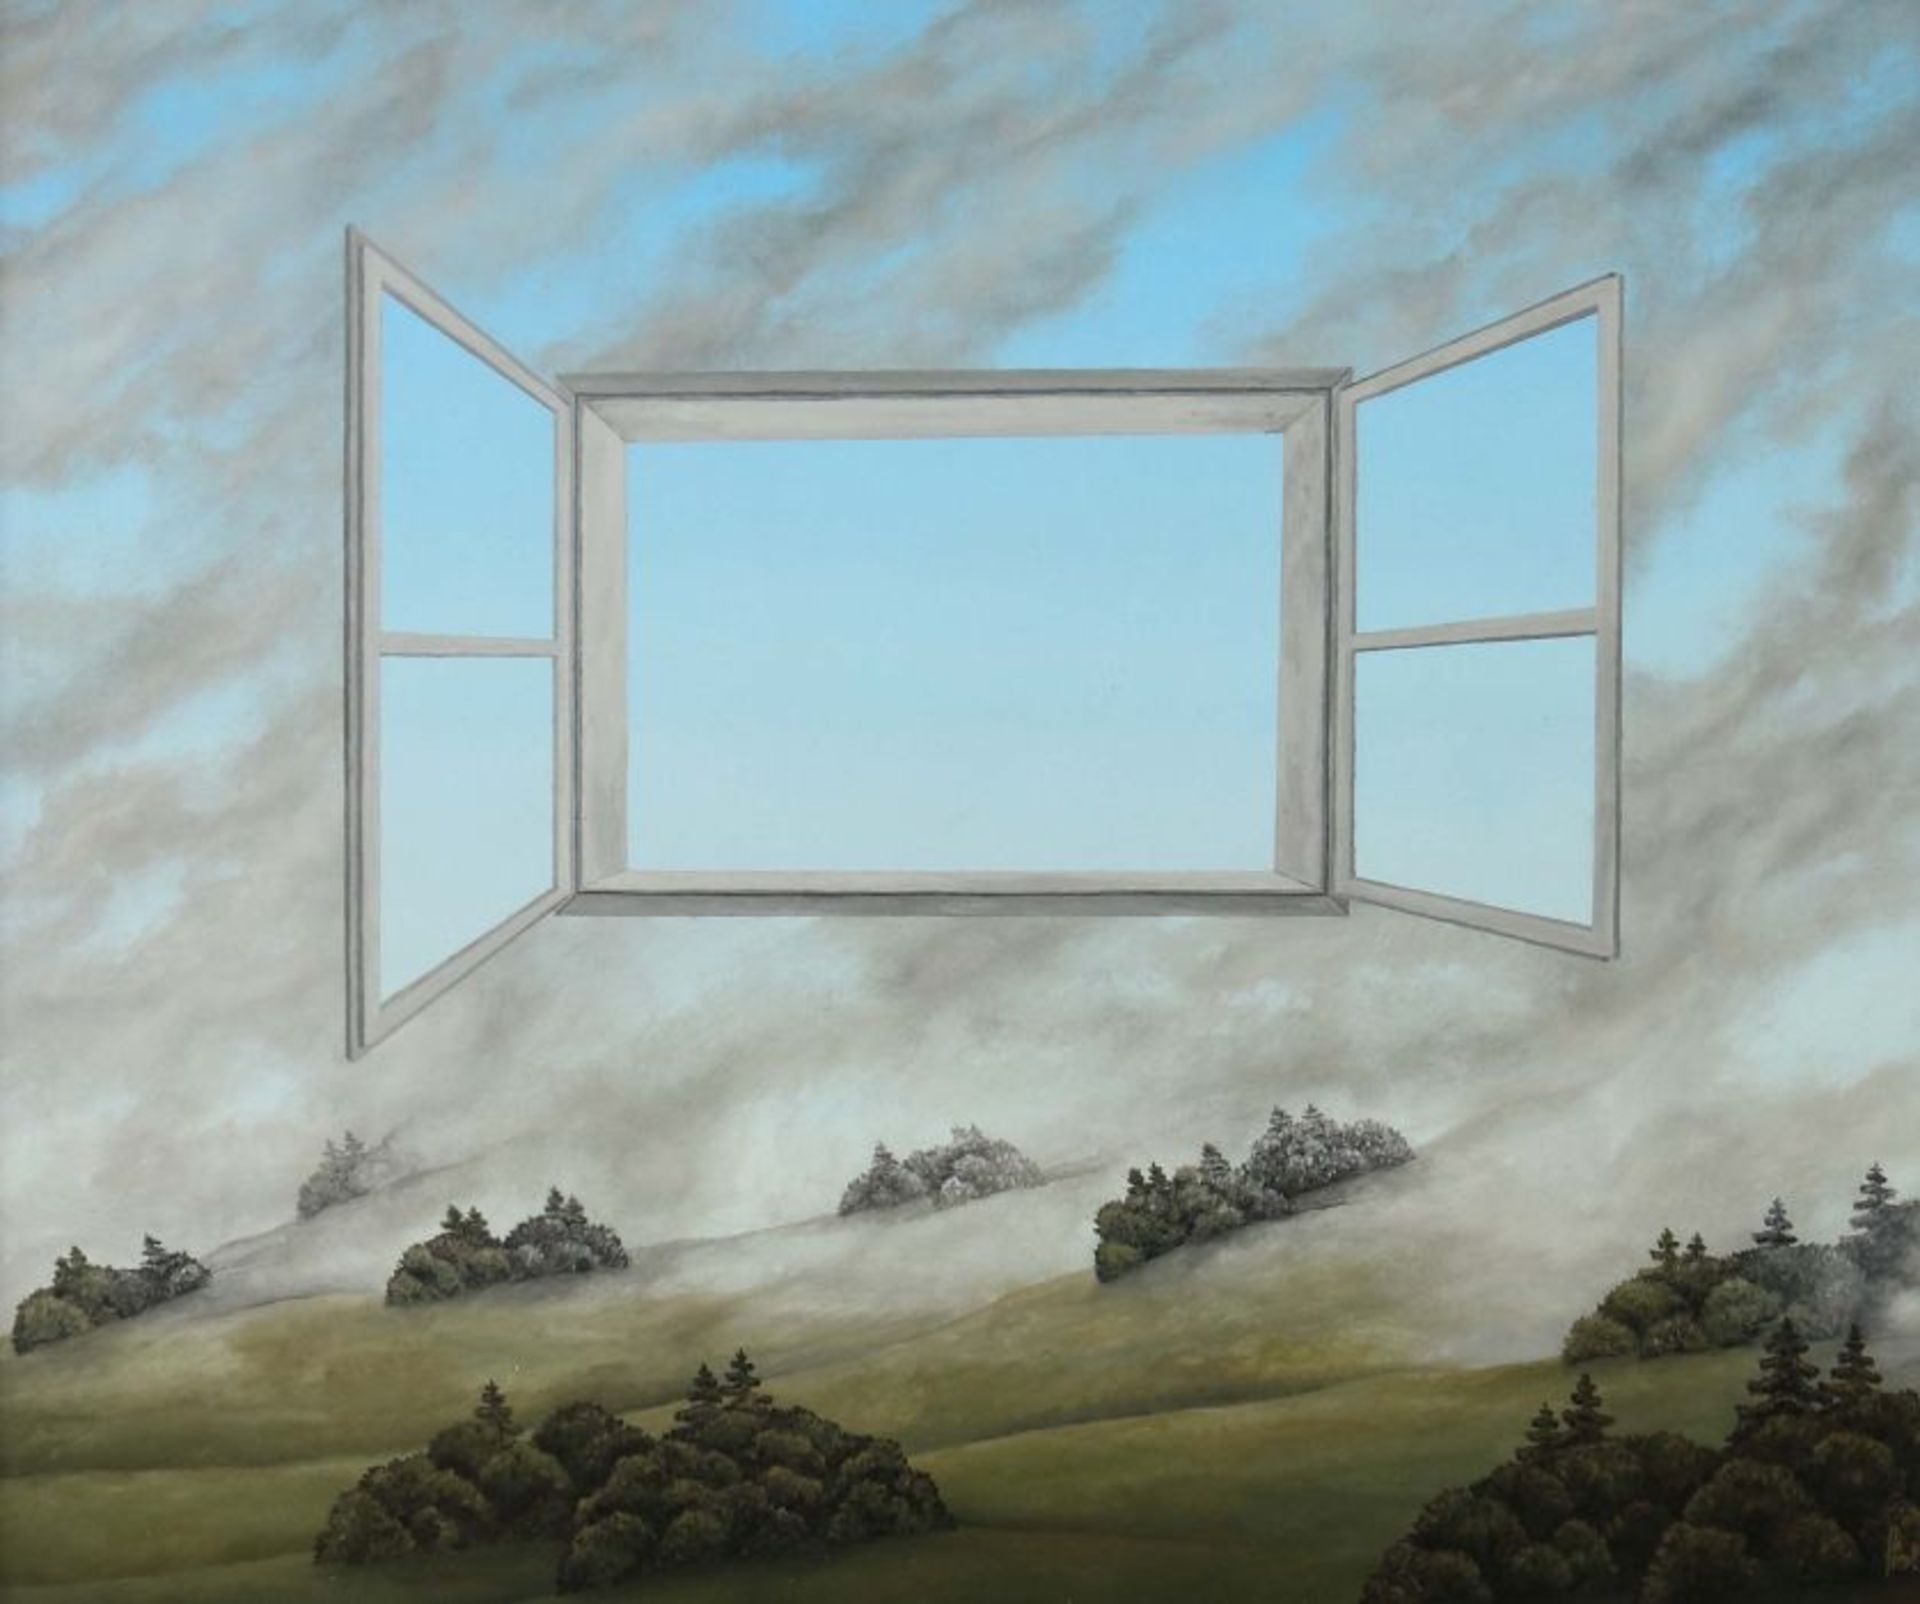 Franz Politzer geb. 1950. "Das weite Fenster", surrealistische Landschaftsdarstellung mit einem